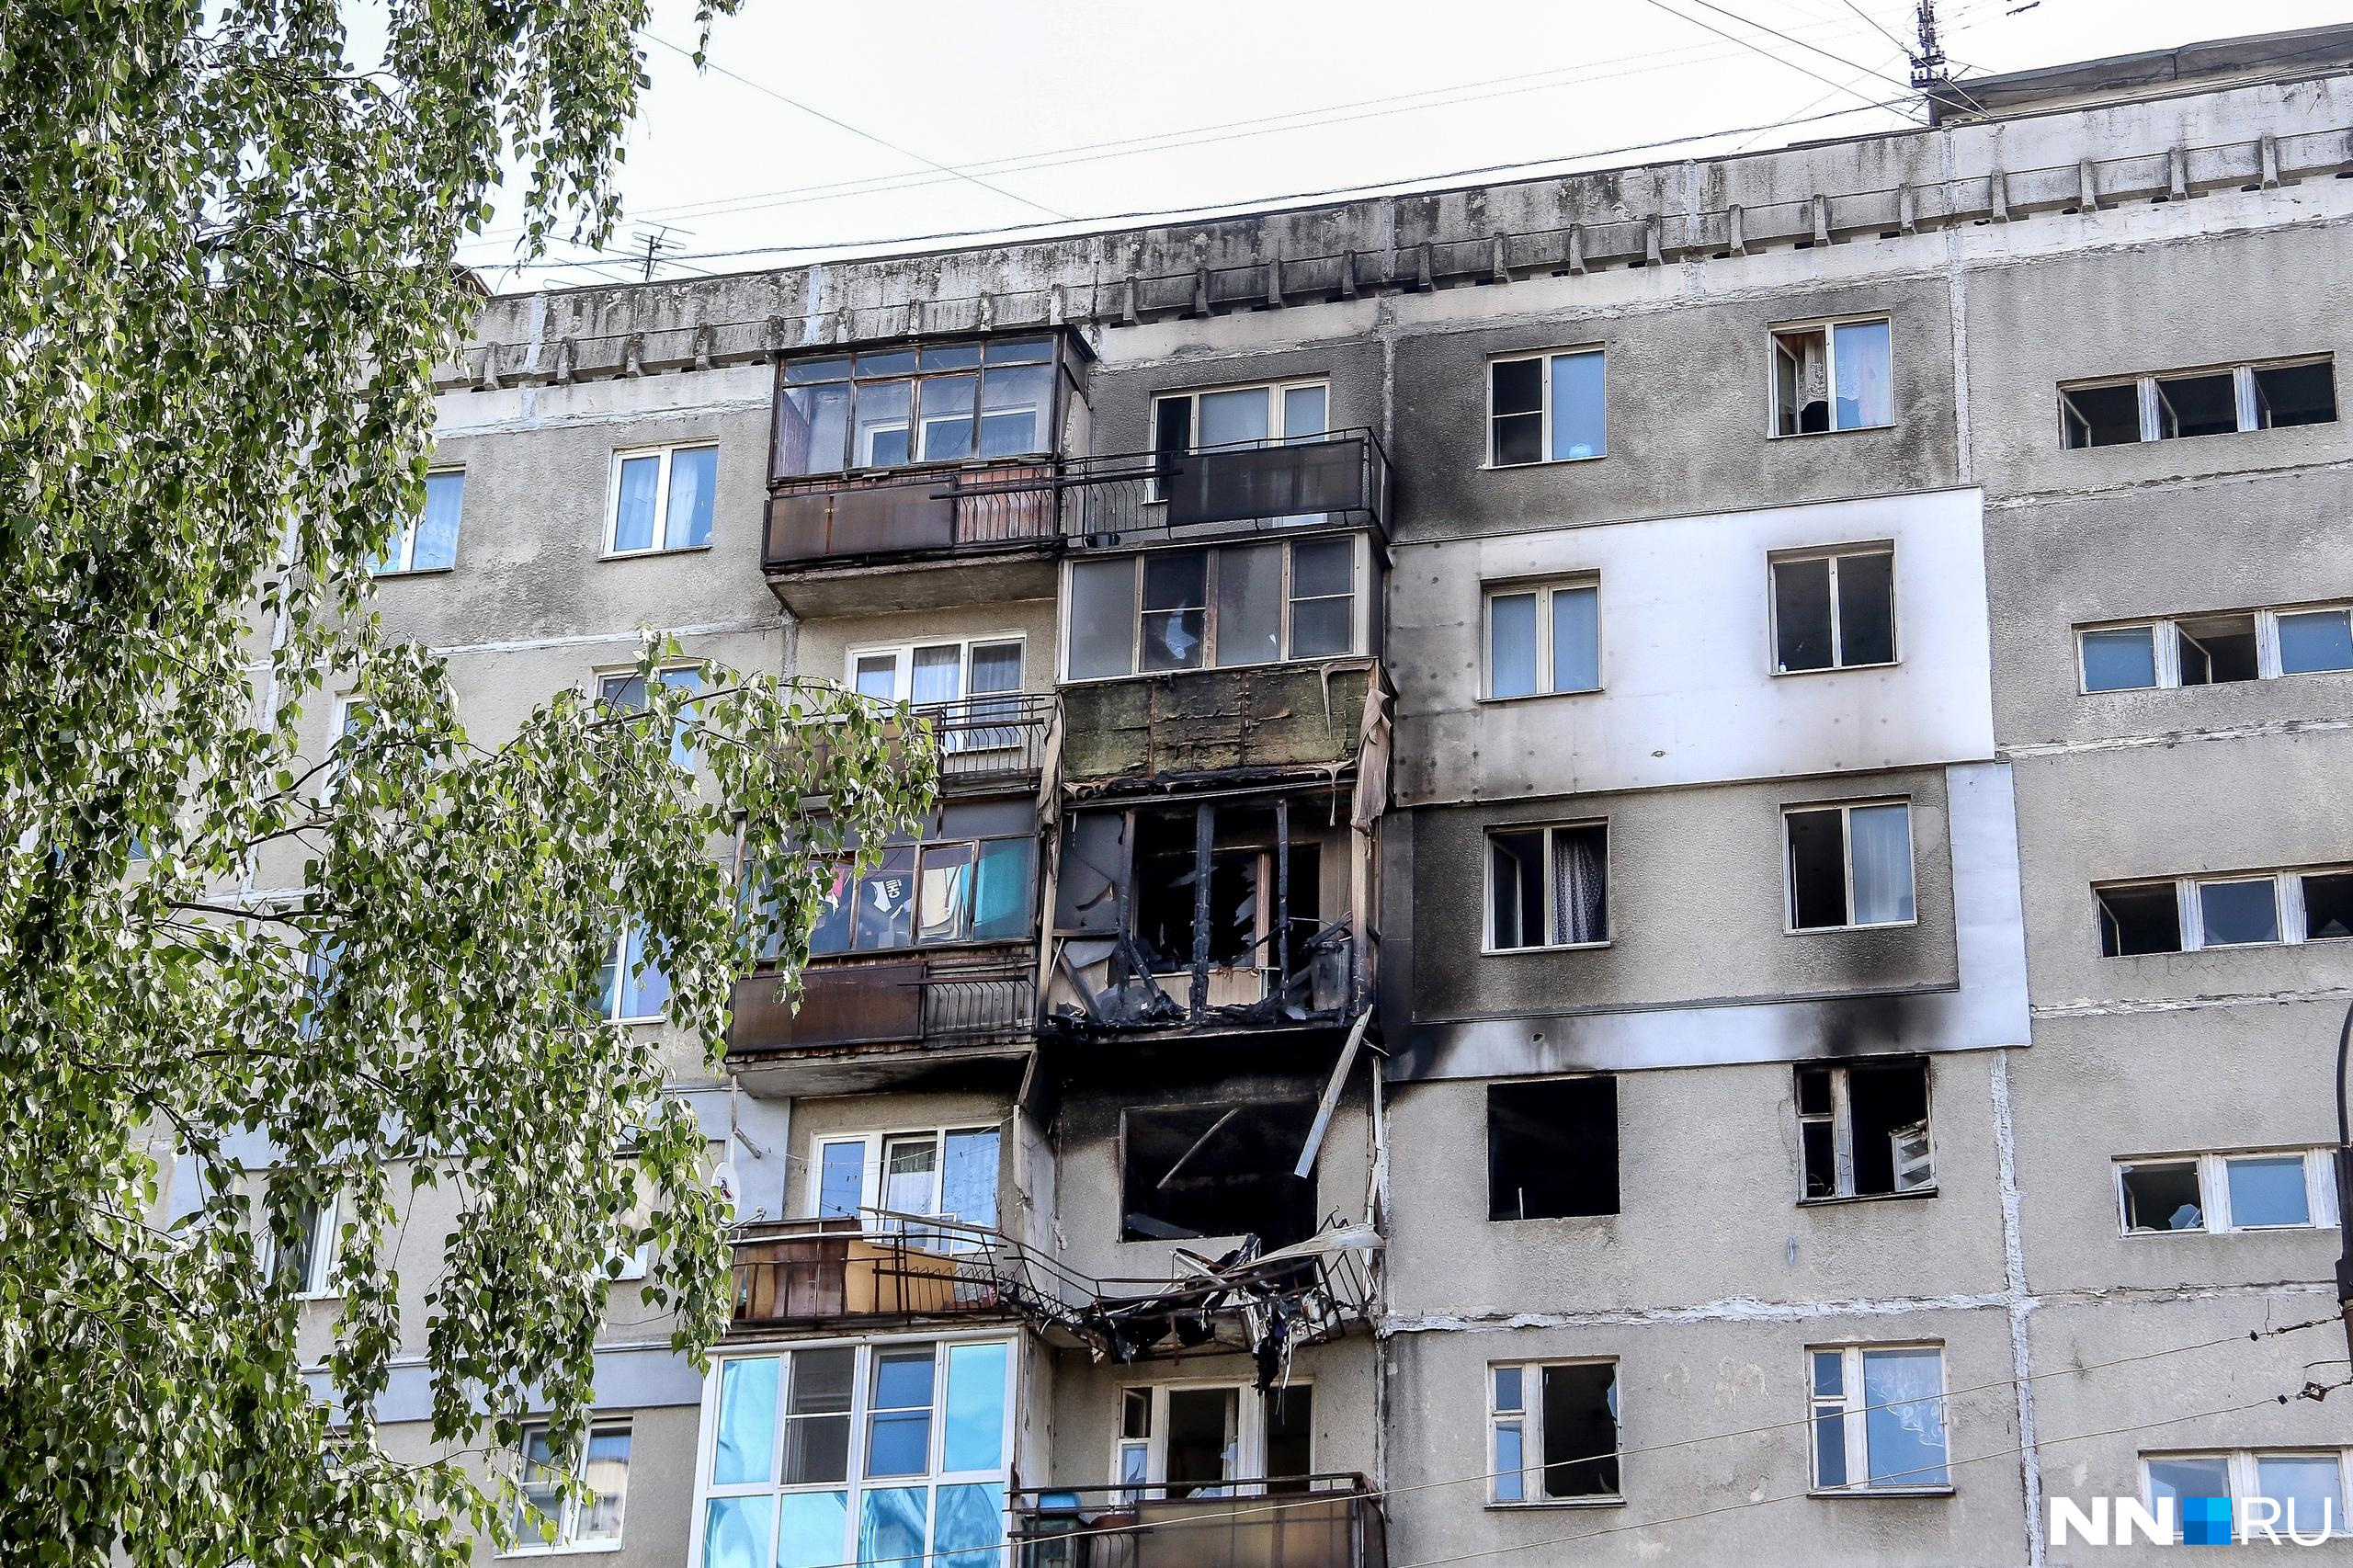 Власти начали подготовку к сносу дома на Краснодонцев, где произошел взрыв газа